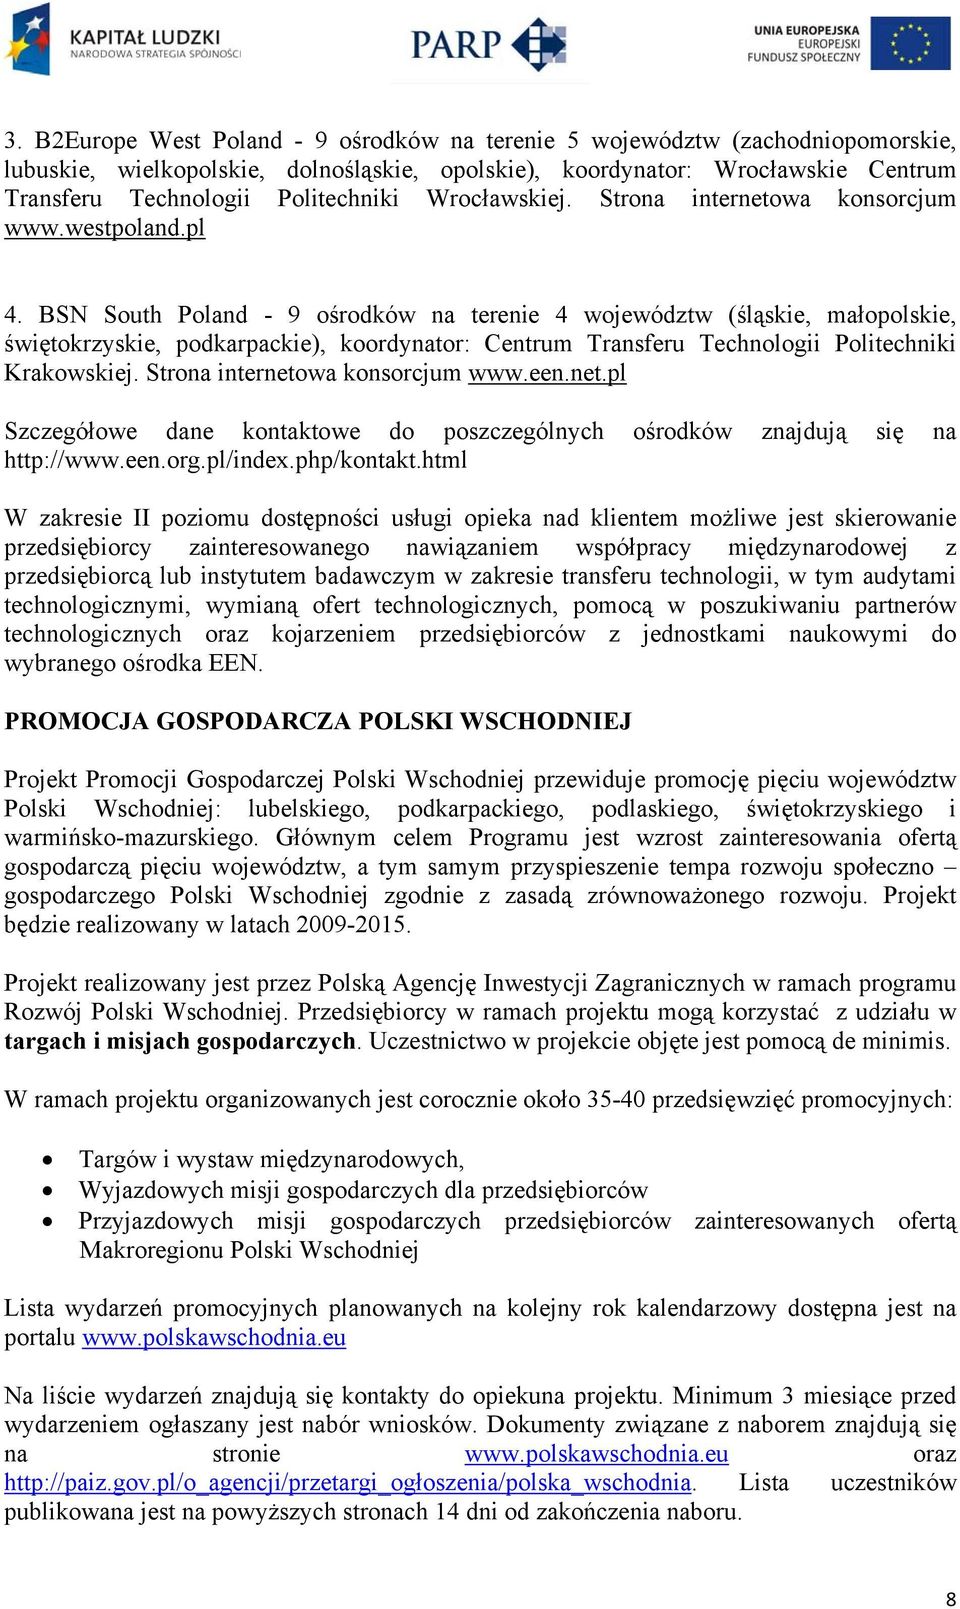 BSN South Poland - 9 ośrodków na terenie 4 województw (śląskie, małopolskie, świętokrzyskie, podkarpackie), koordynator: Centrum Transferu Technologii Politechniki Krakowskiej.